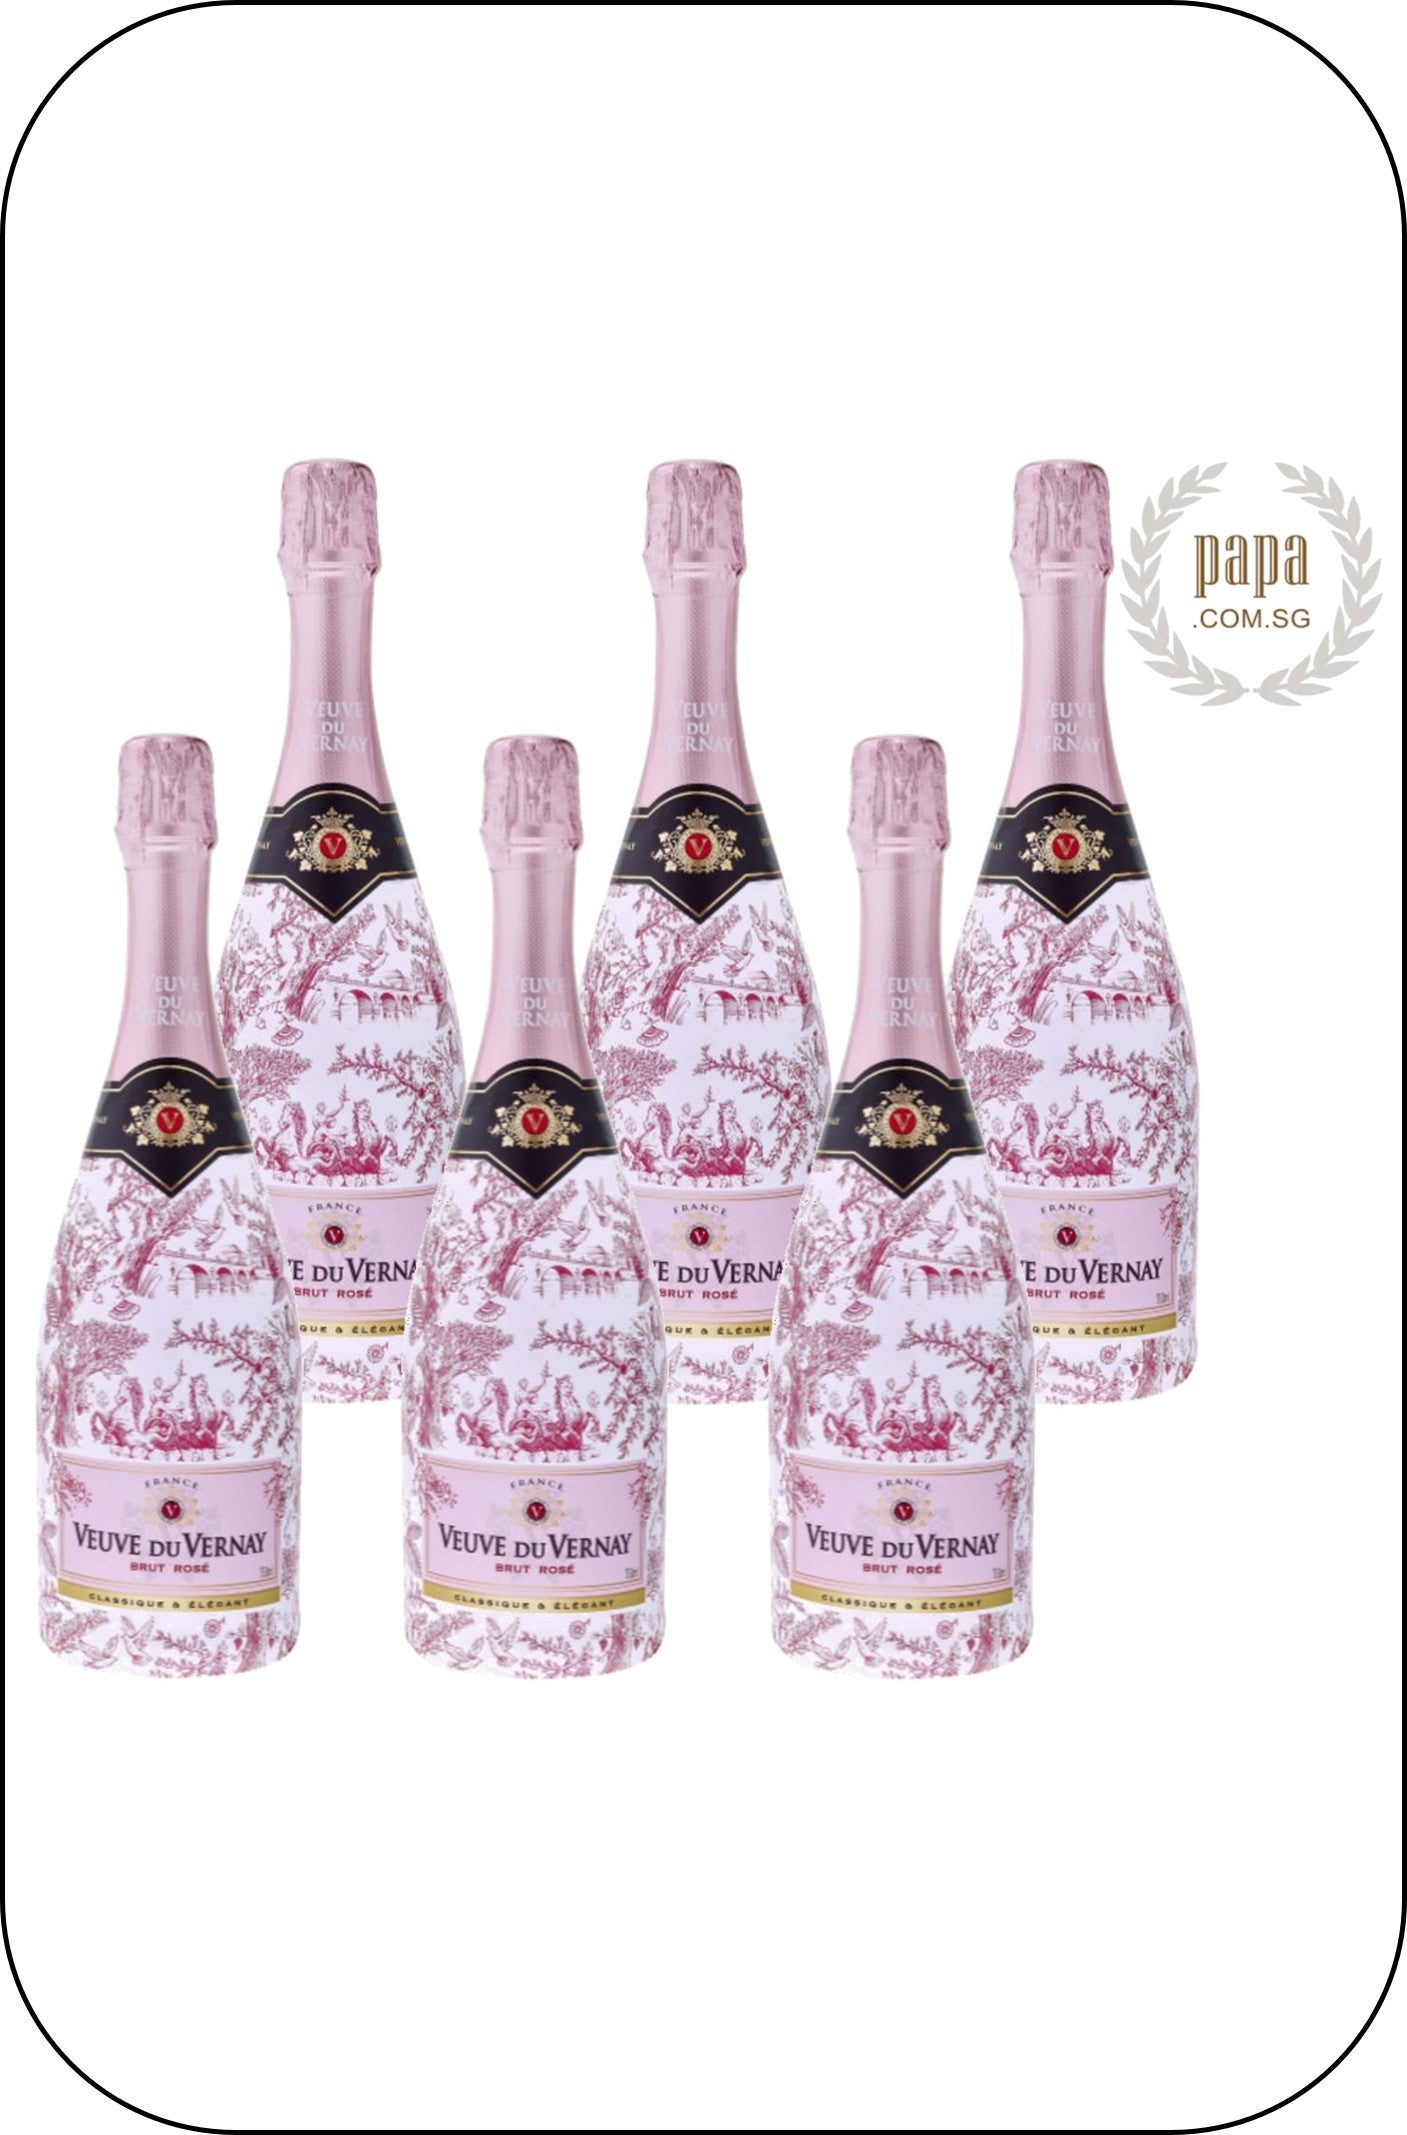 Veuve du Vernay Brut Rosé NV - Limited Edition